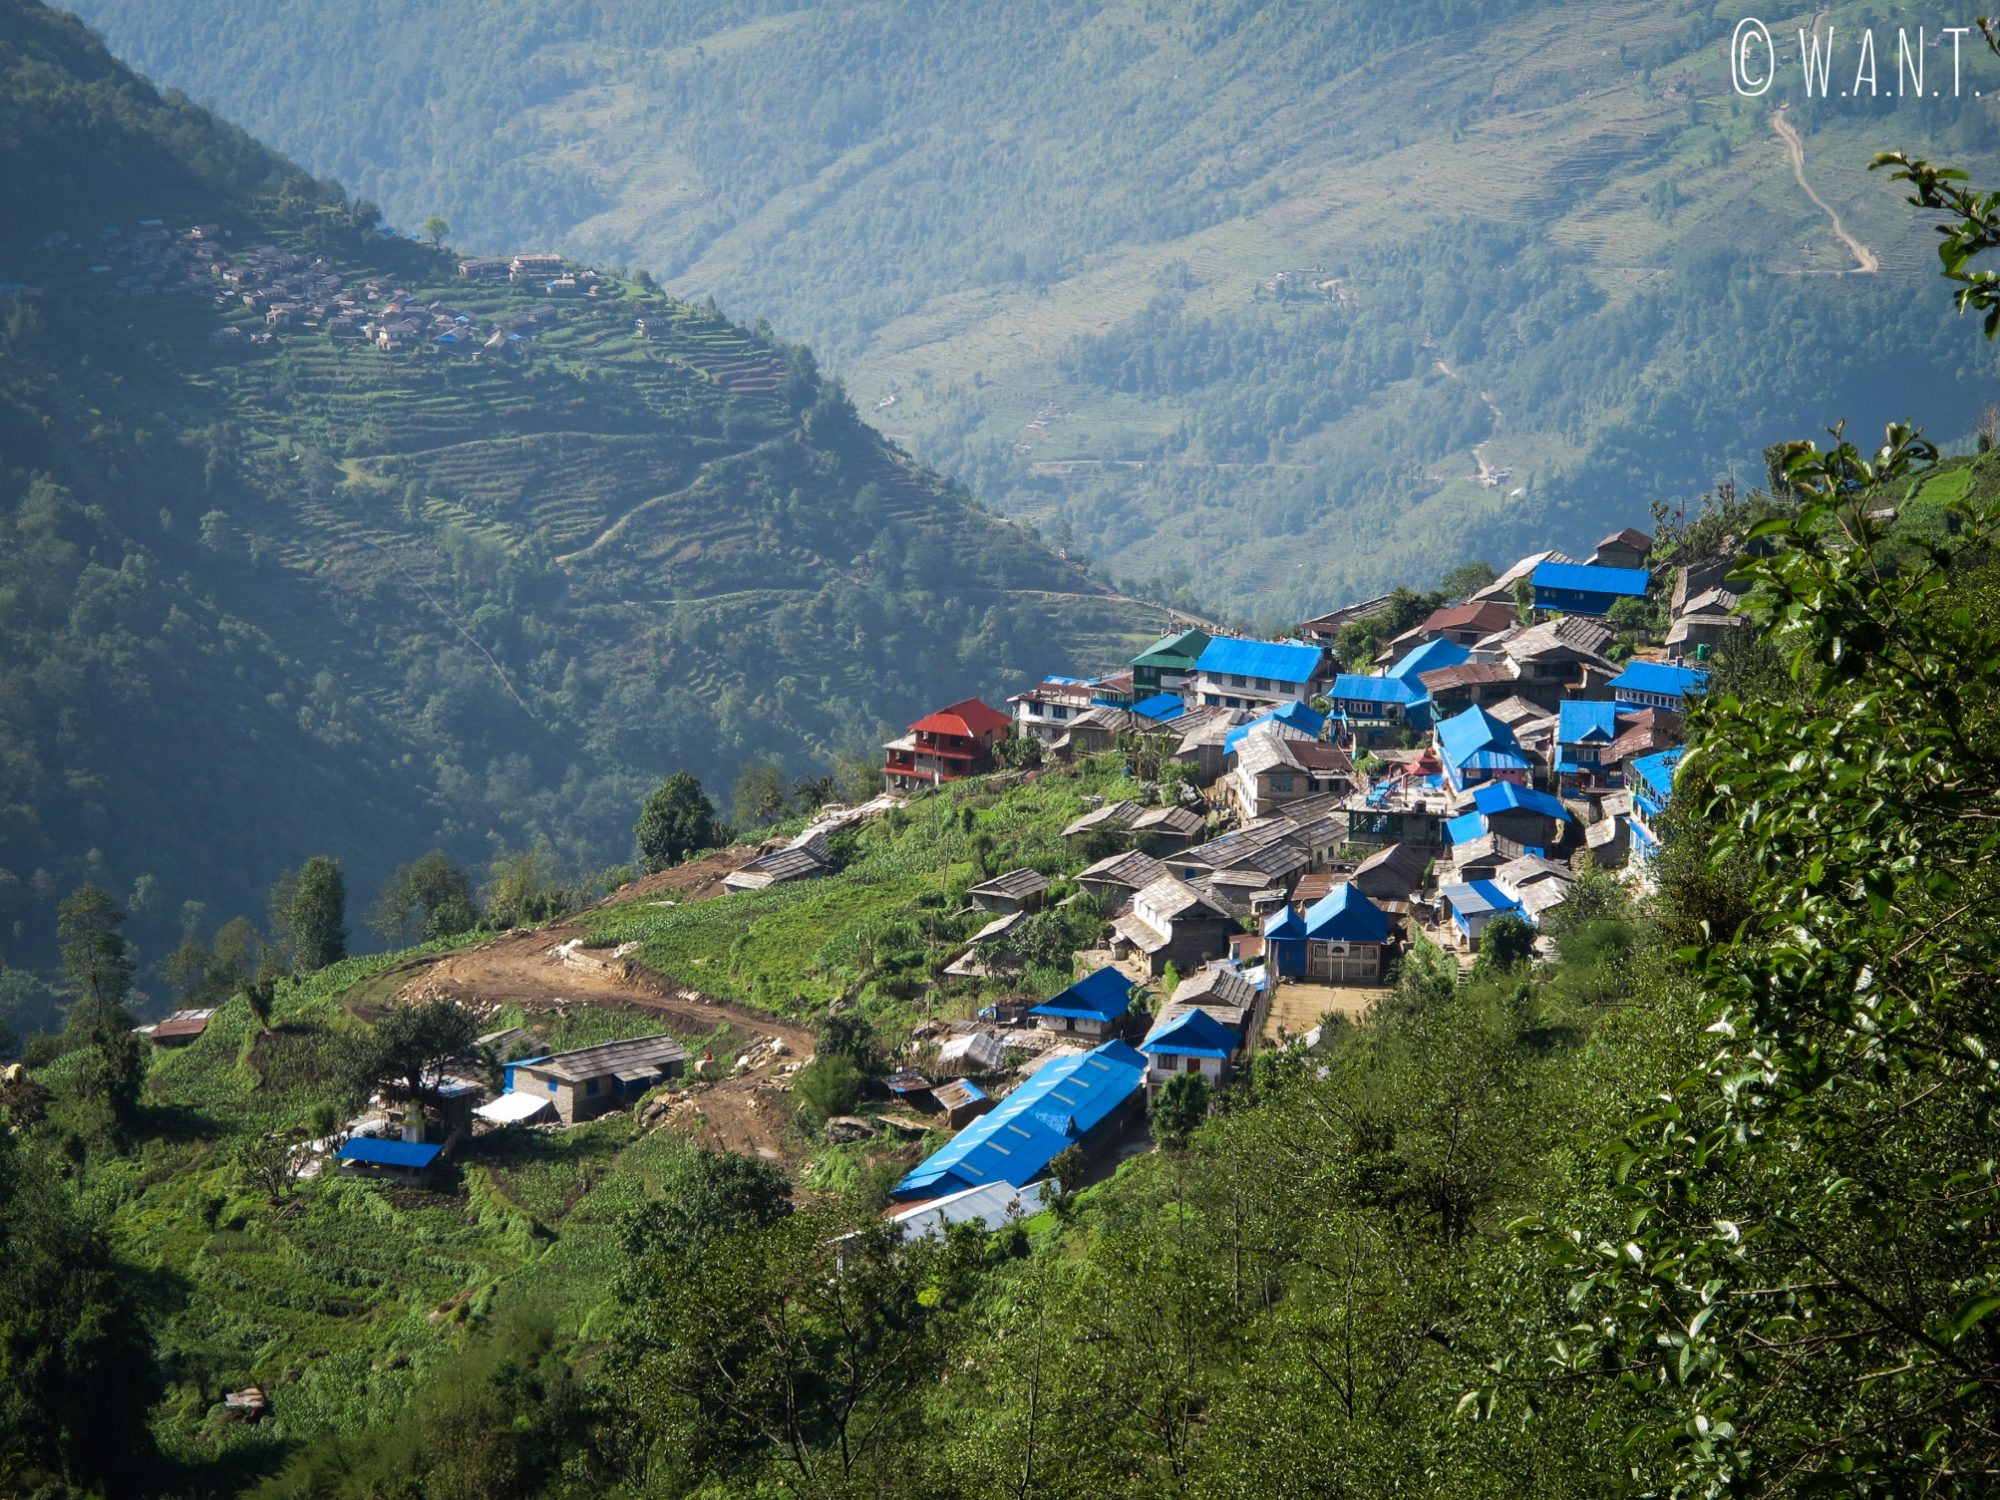 Notre première étape, Ulleri, est un village en flanc de montagne des plus typiques dans les Annapurnas